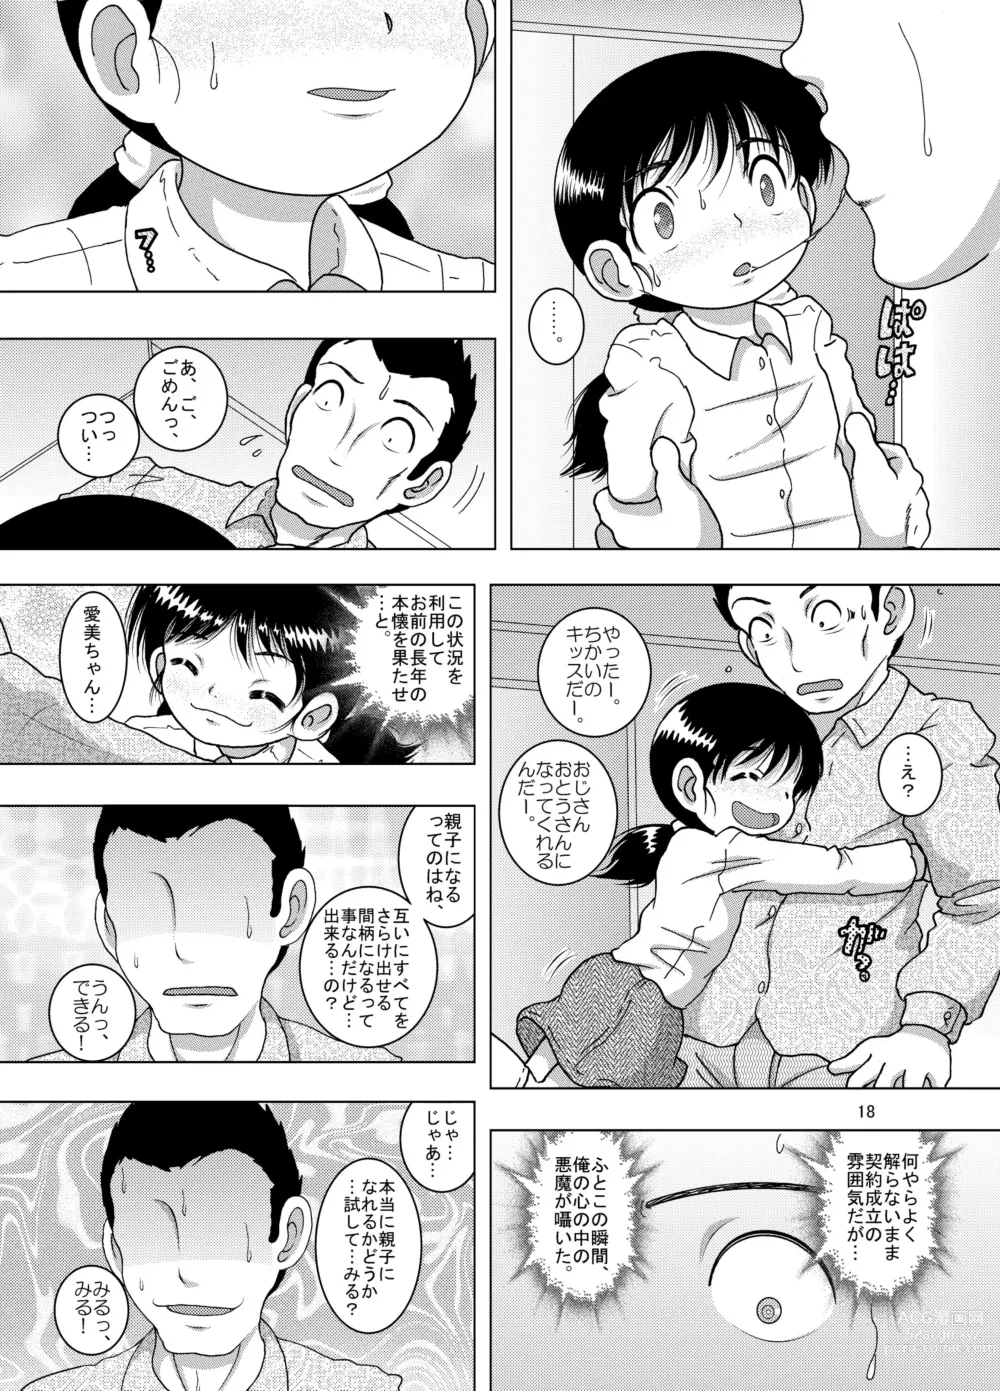 Page 18 of doujinshi Hoen Yokan